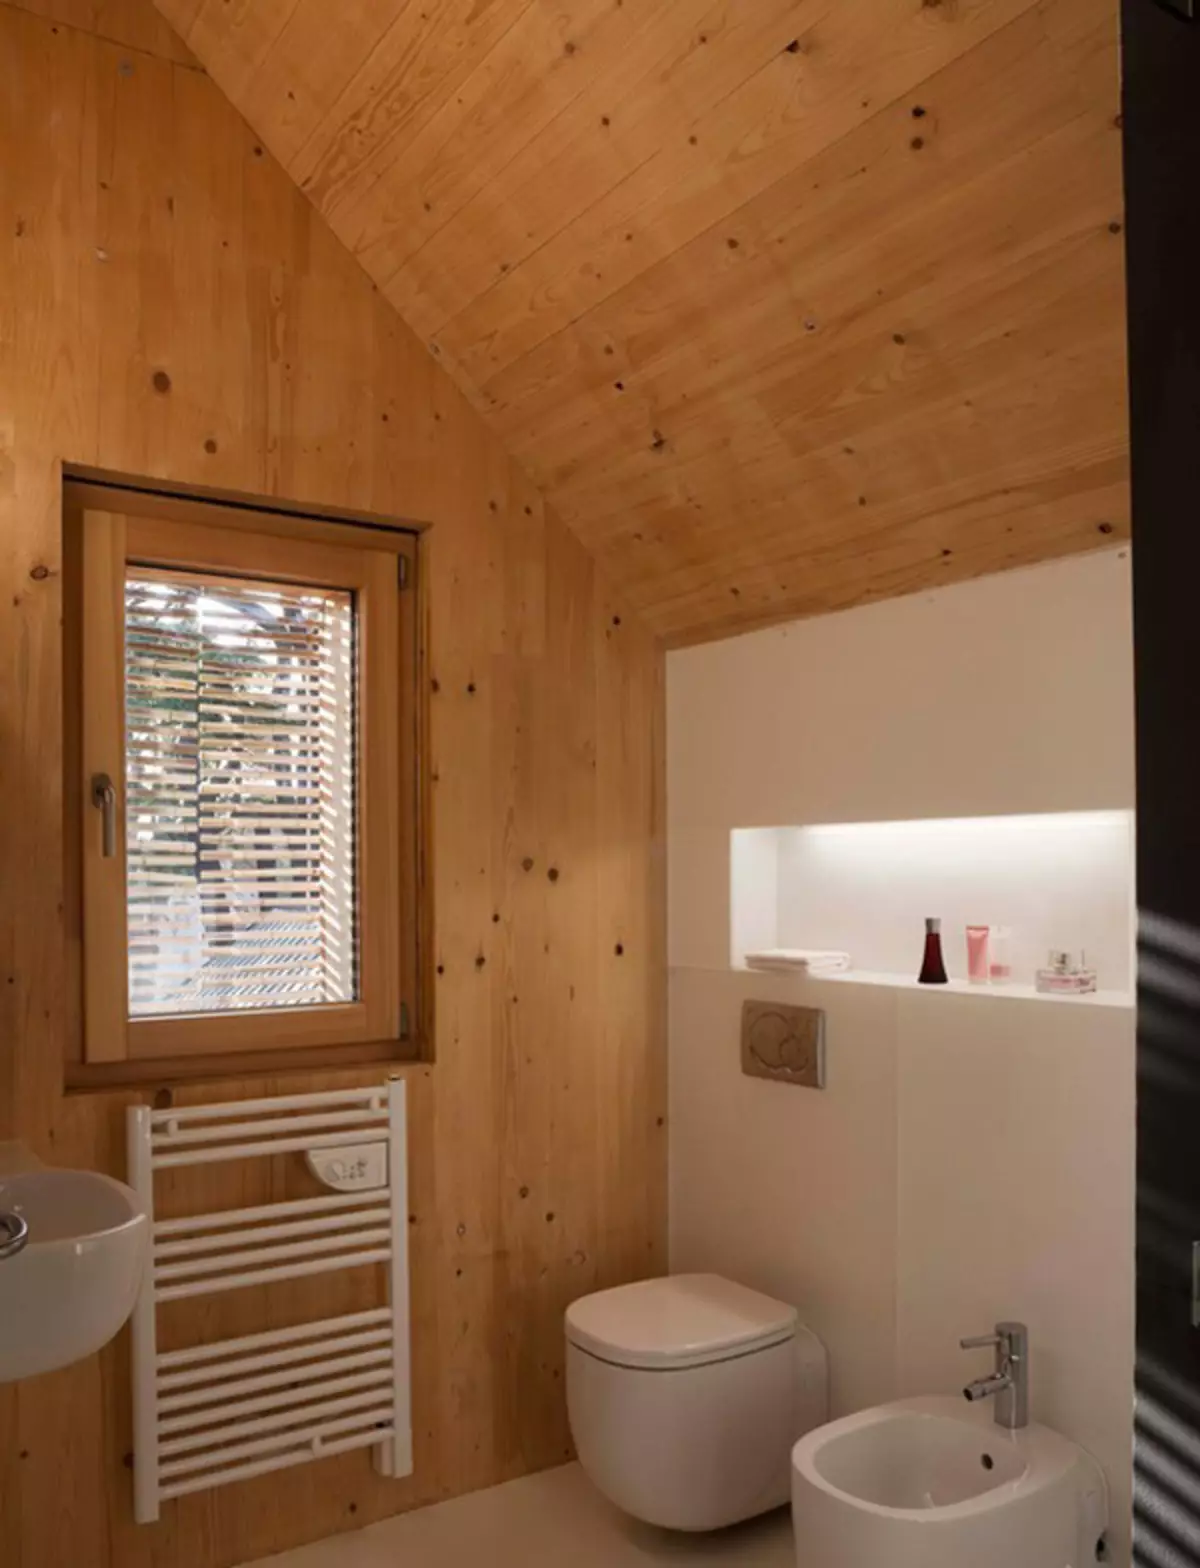 الحمام في منزل خشبي (76 صور): تصميم غرفة في منزل من حانة في البلاد، والأمثلة على إنهاء الأرضيات، وخطط التهوية 10475_69